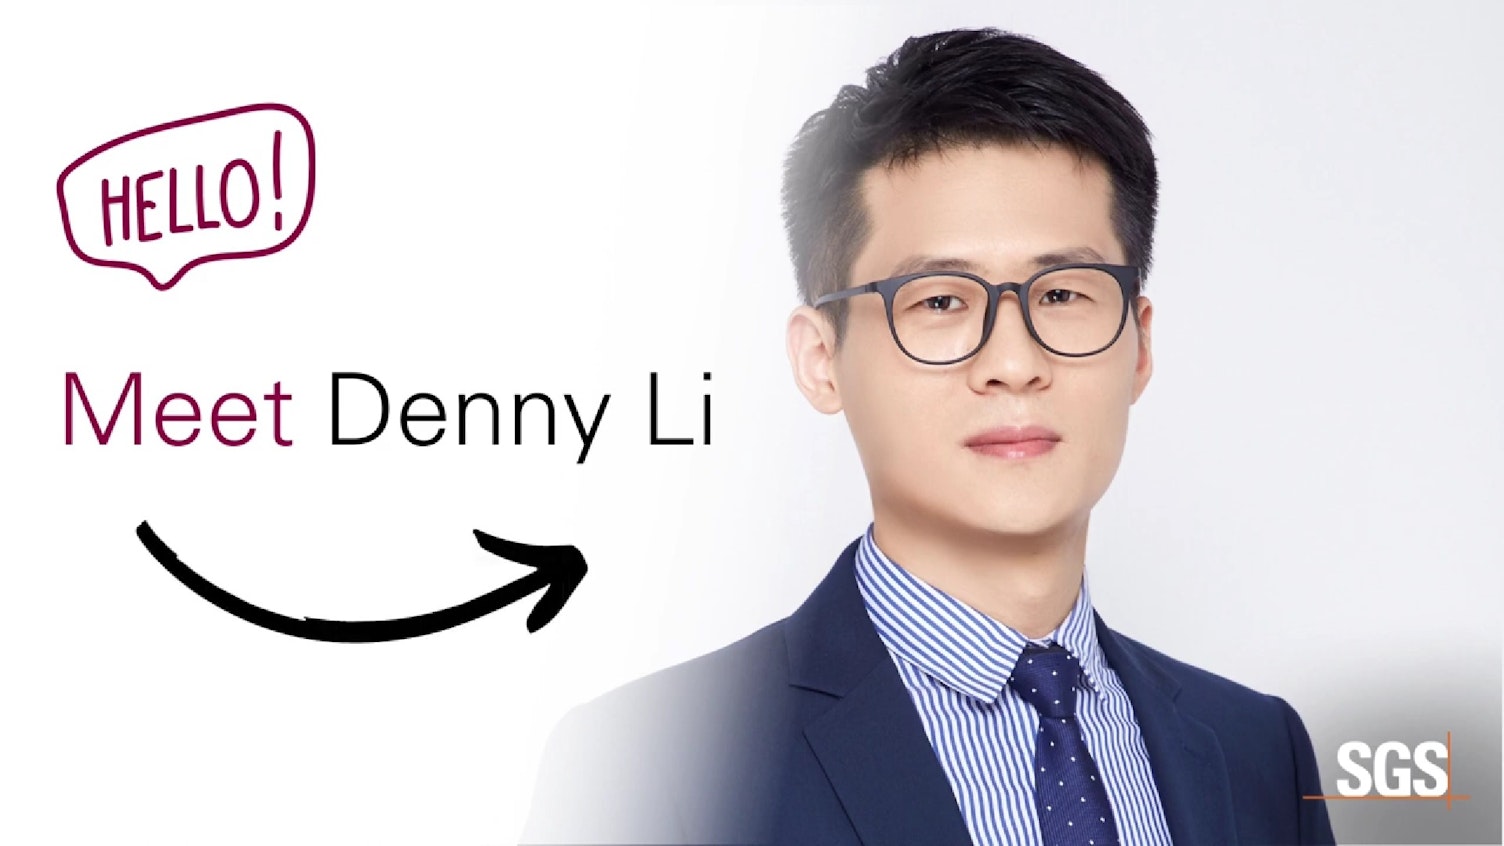 Faceți cunoștință cu expertul nostru în cosmetică și igienă, Denny Li